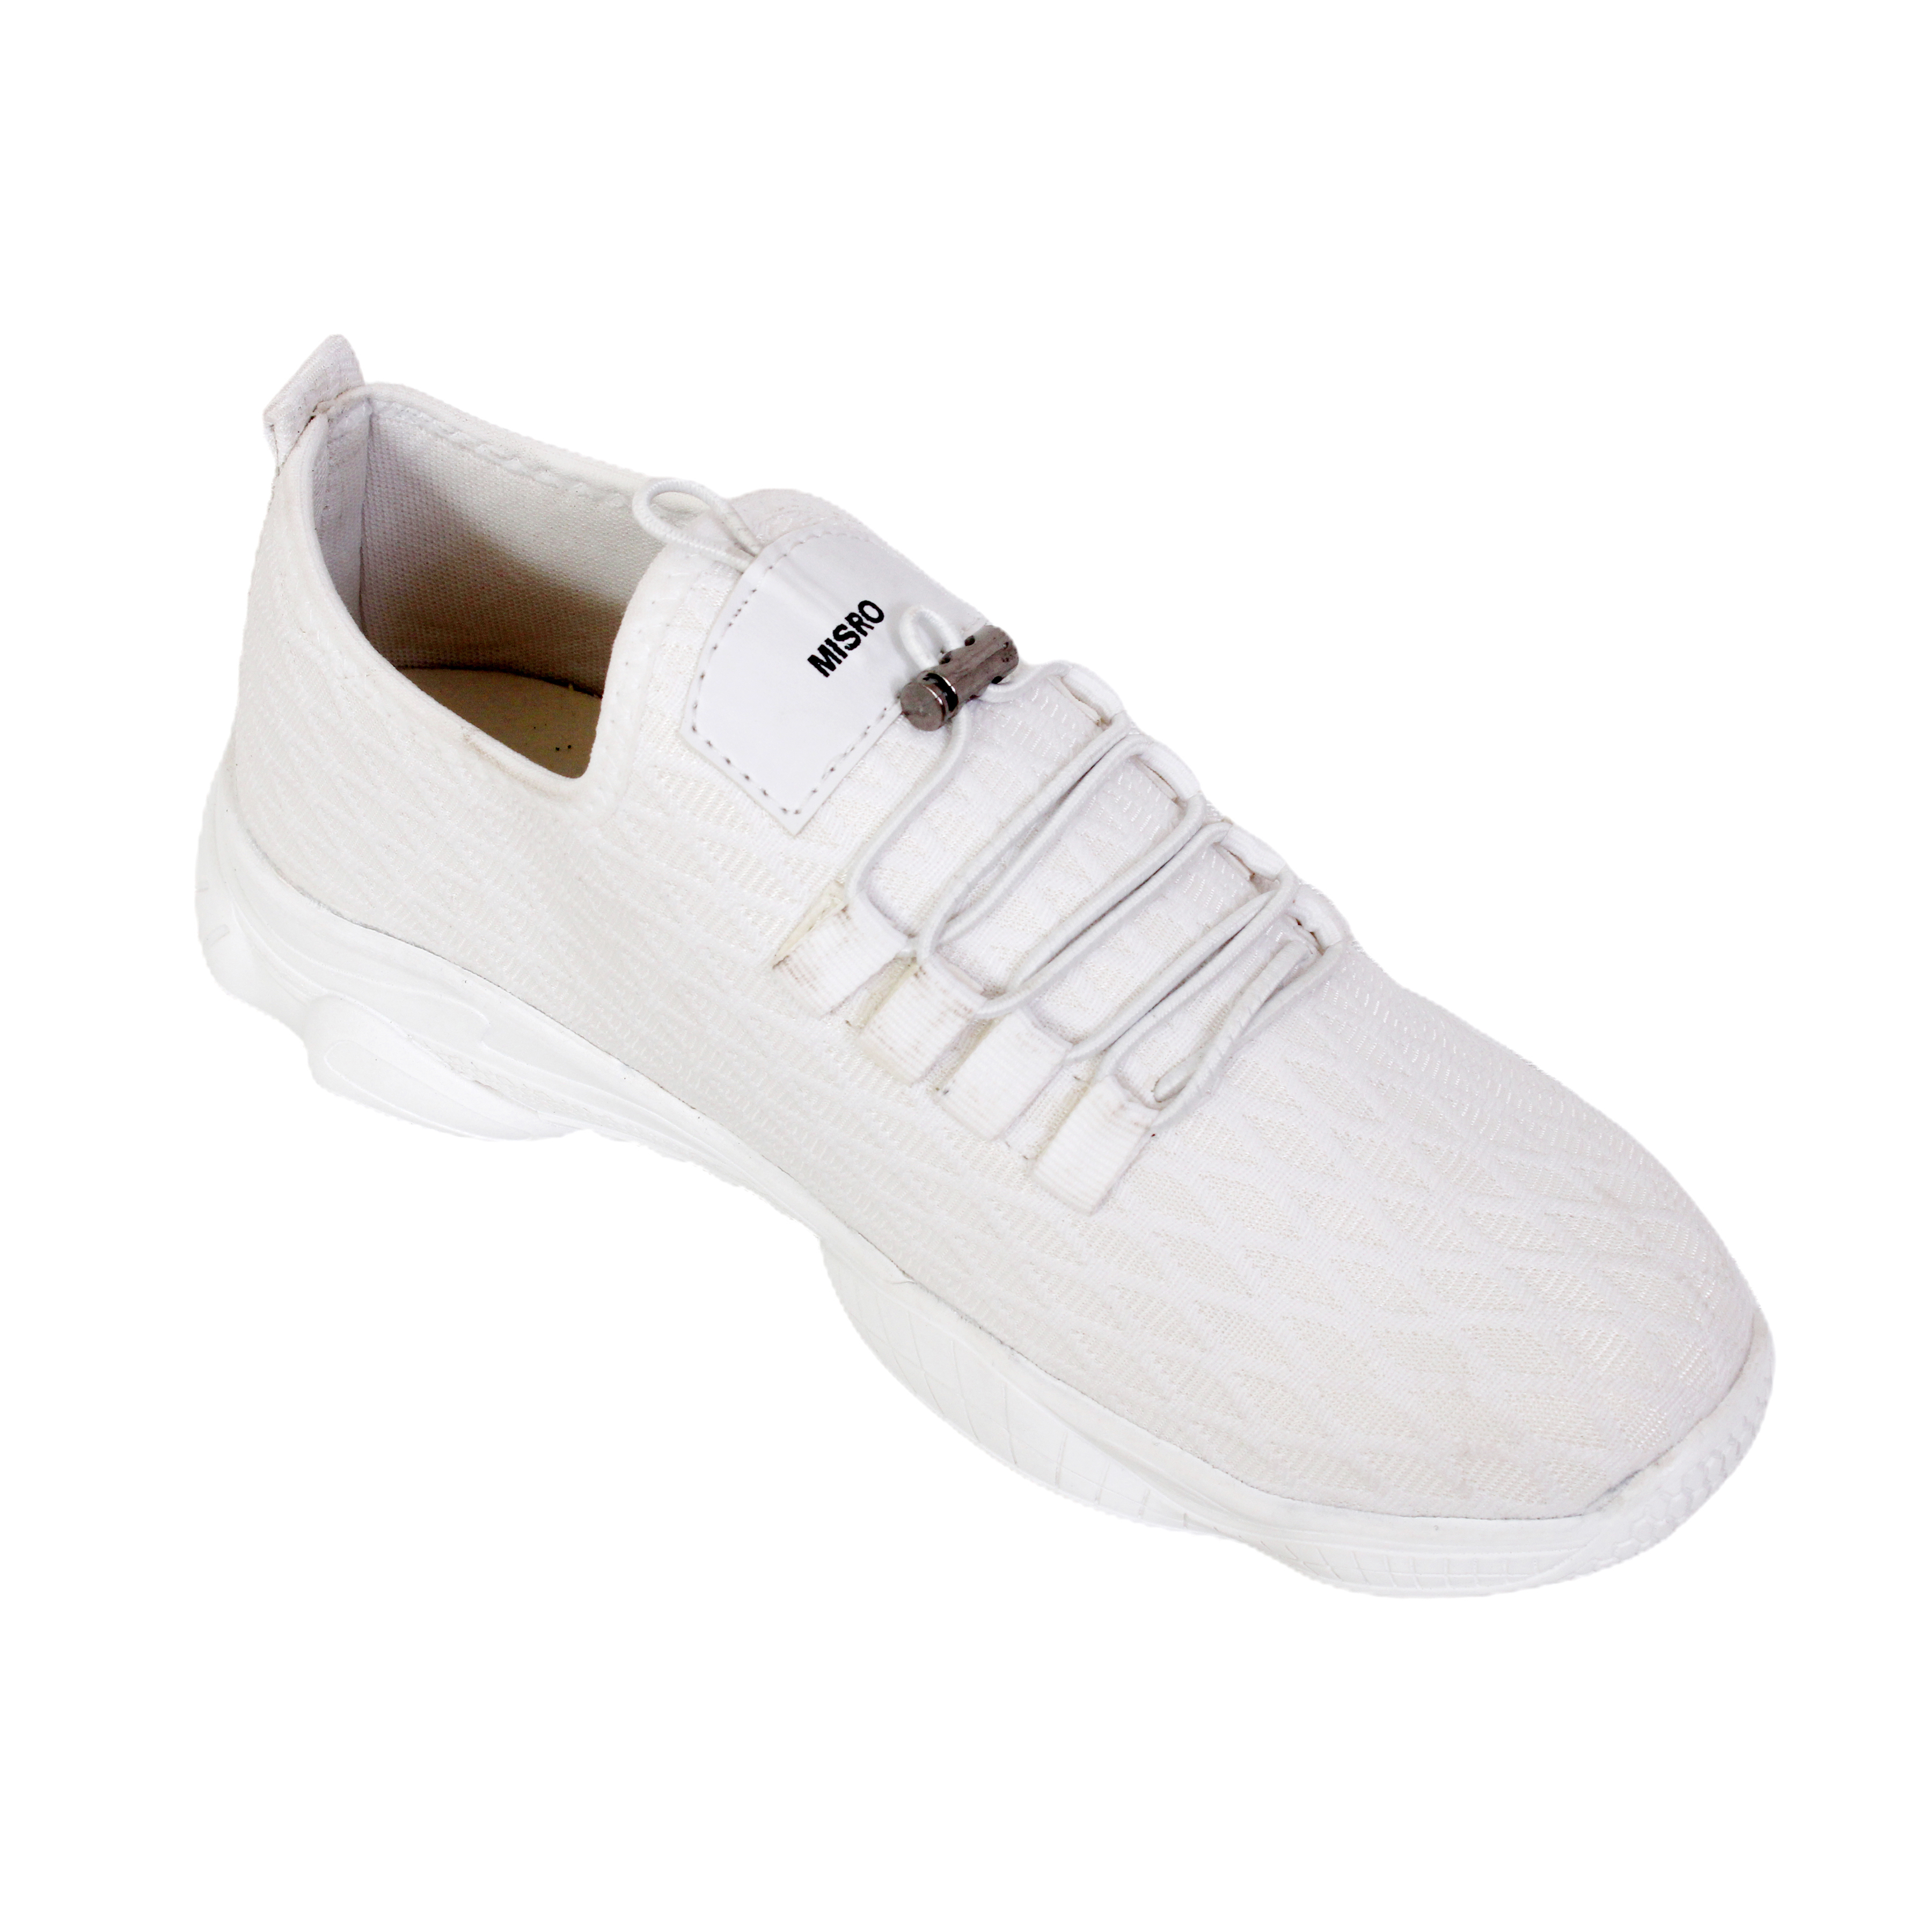 Misro Boys White Sneakers